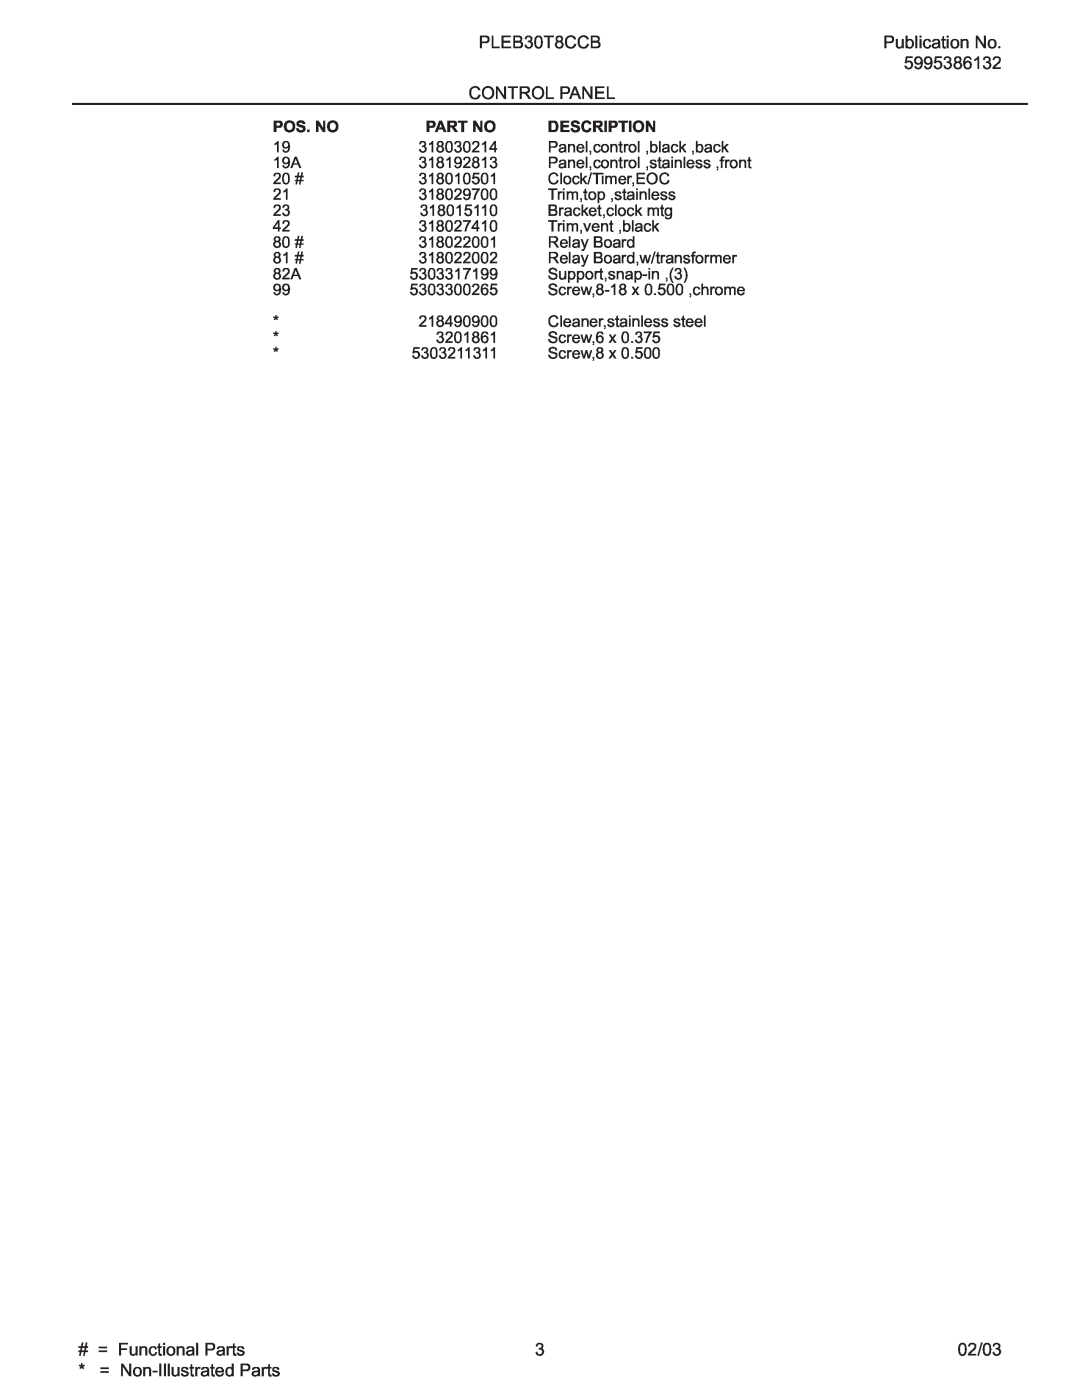 Electrolux PLEB30T8C instruction sheet Pos. No, Description 